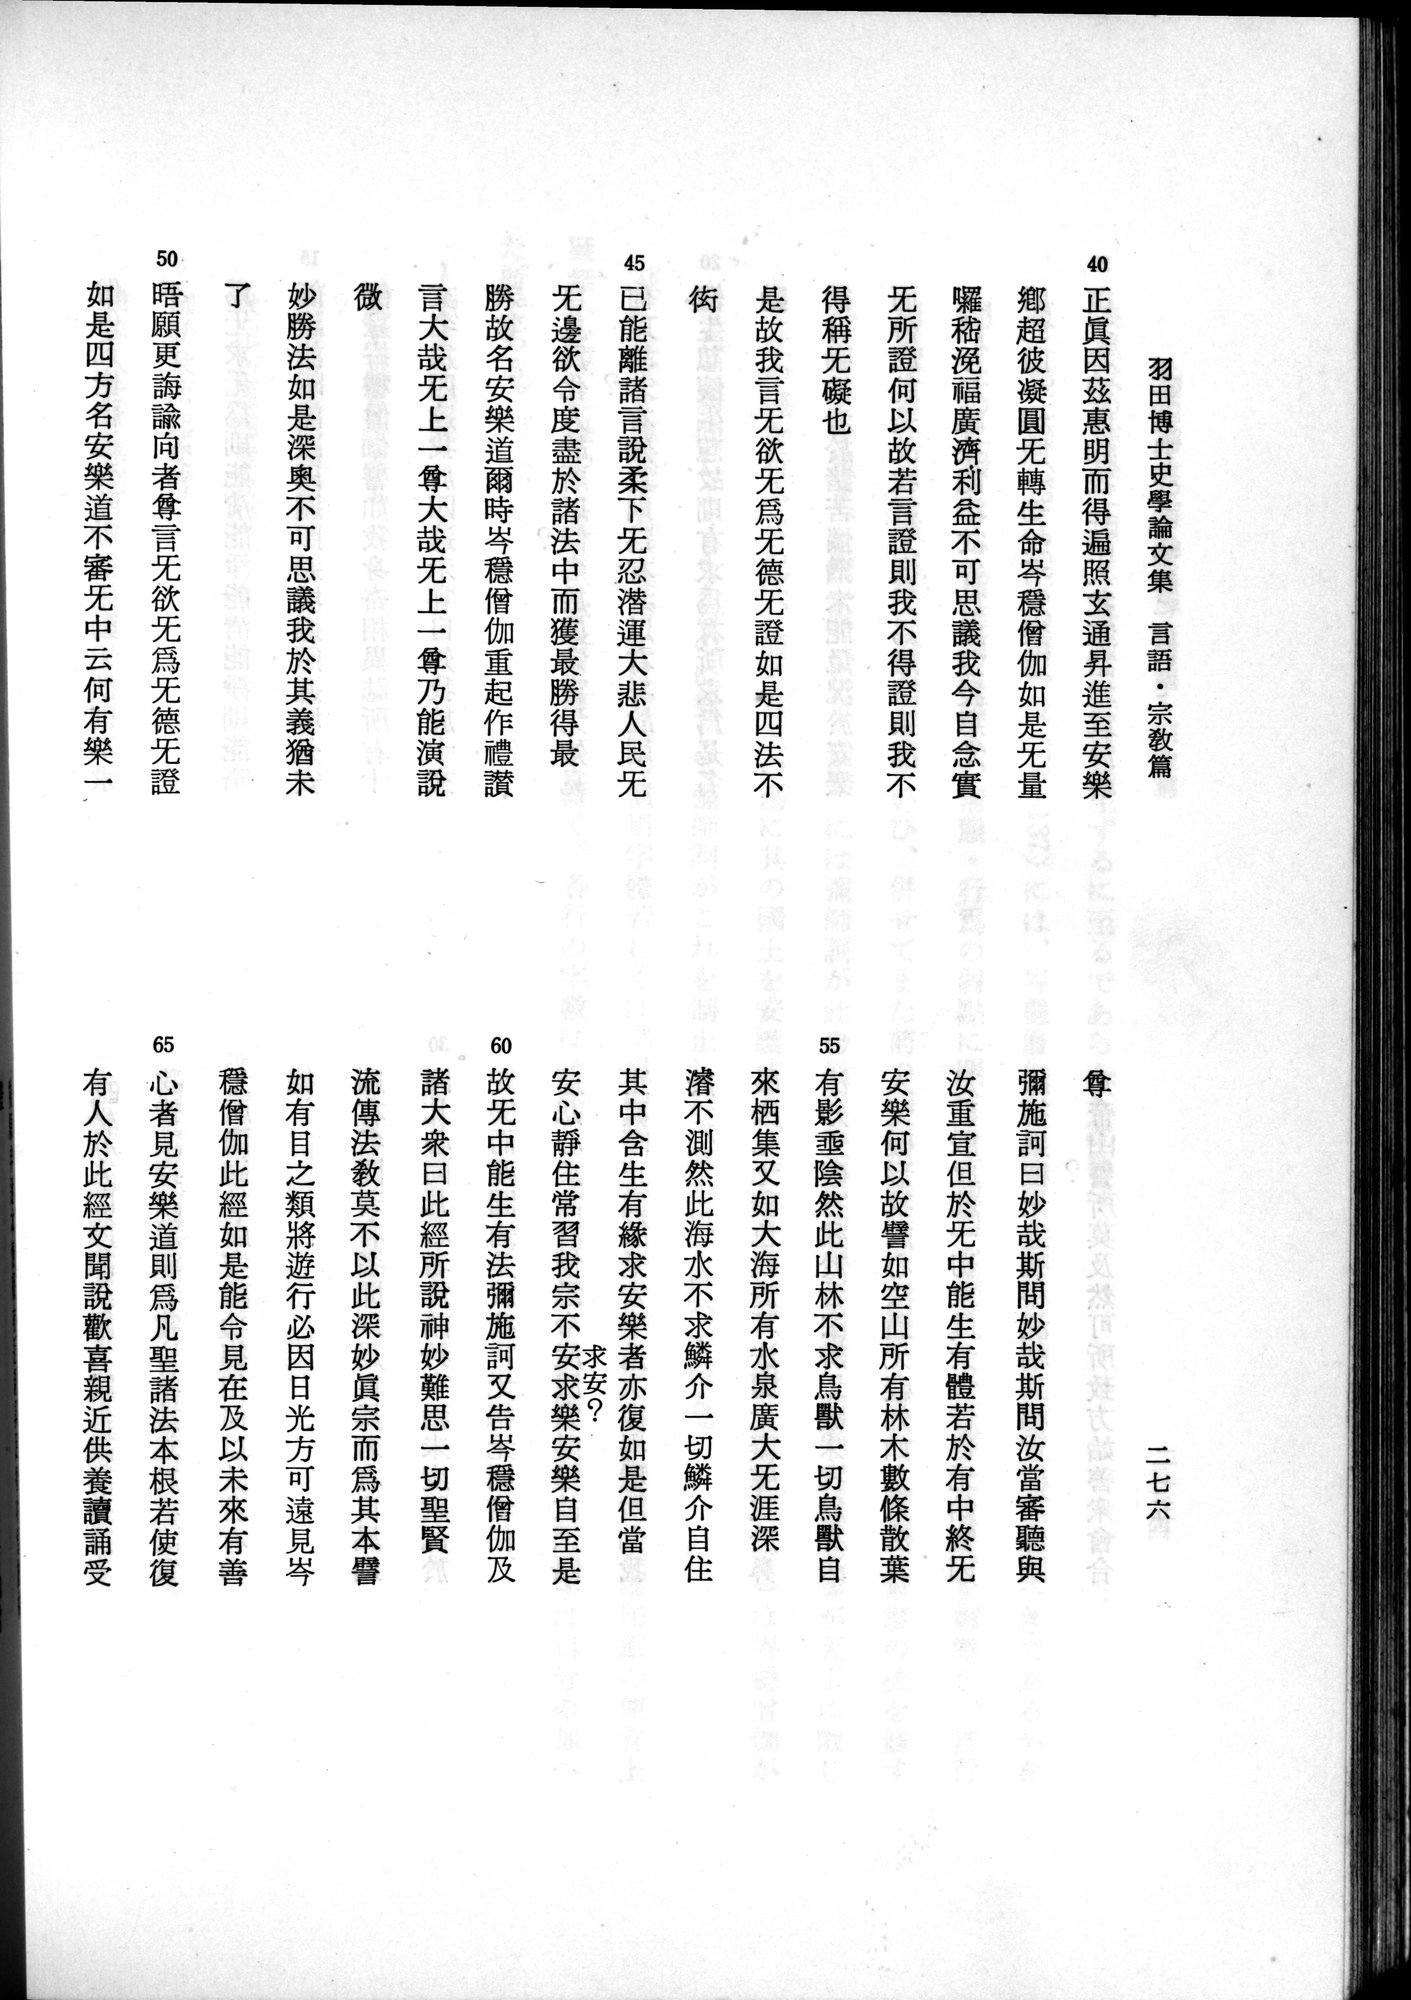 羽田博士史学論文集 : vol.2 / 338 ページ（白黒高解像度画像）